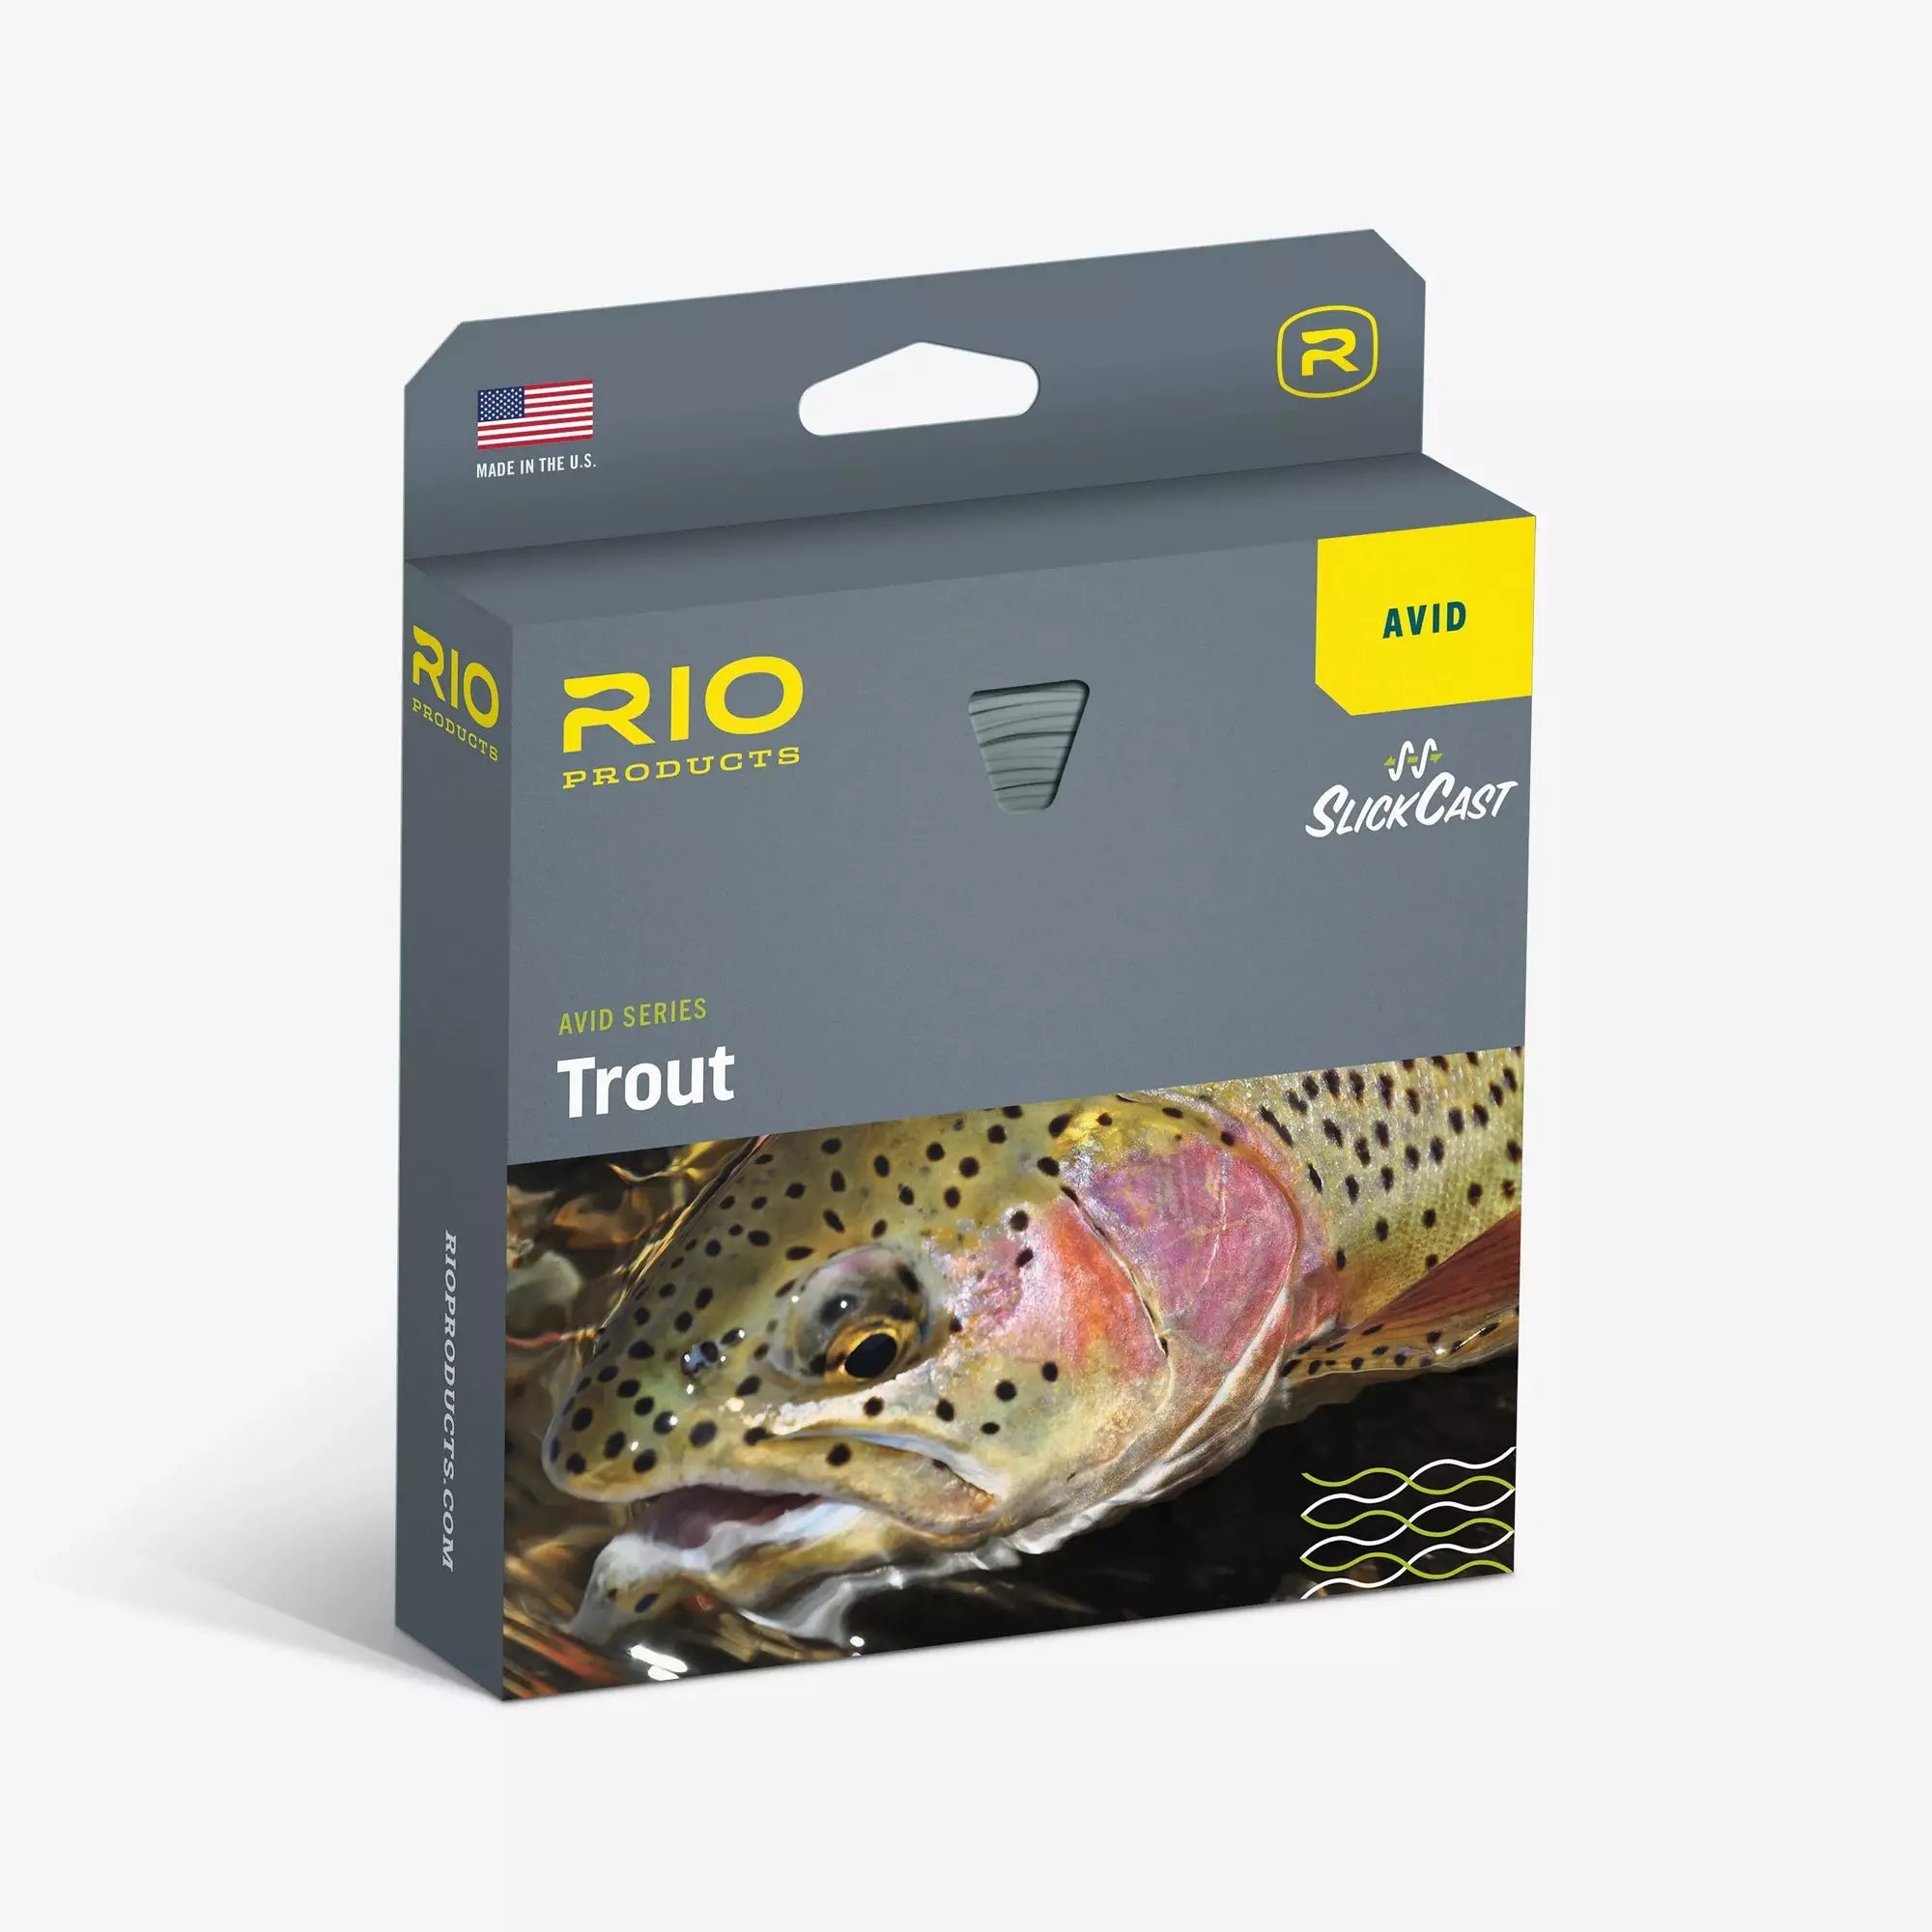 Rio Gold Avid Trout